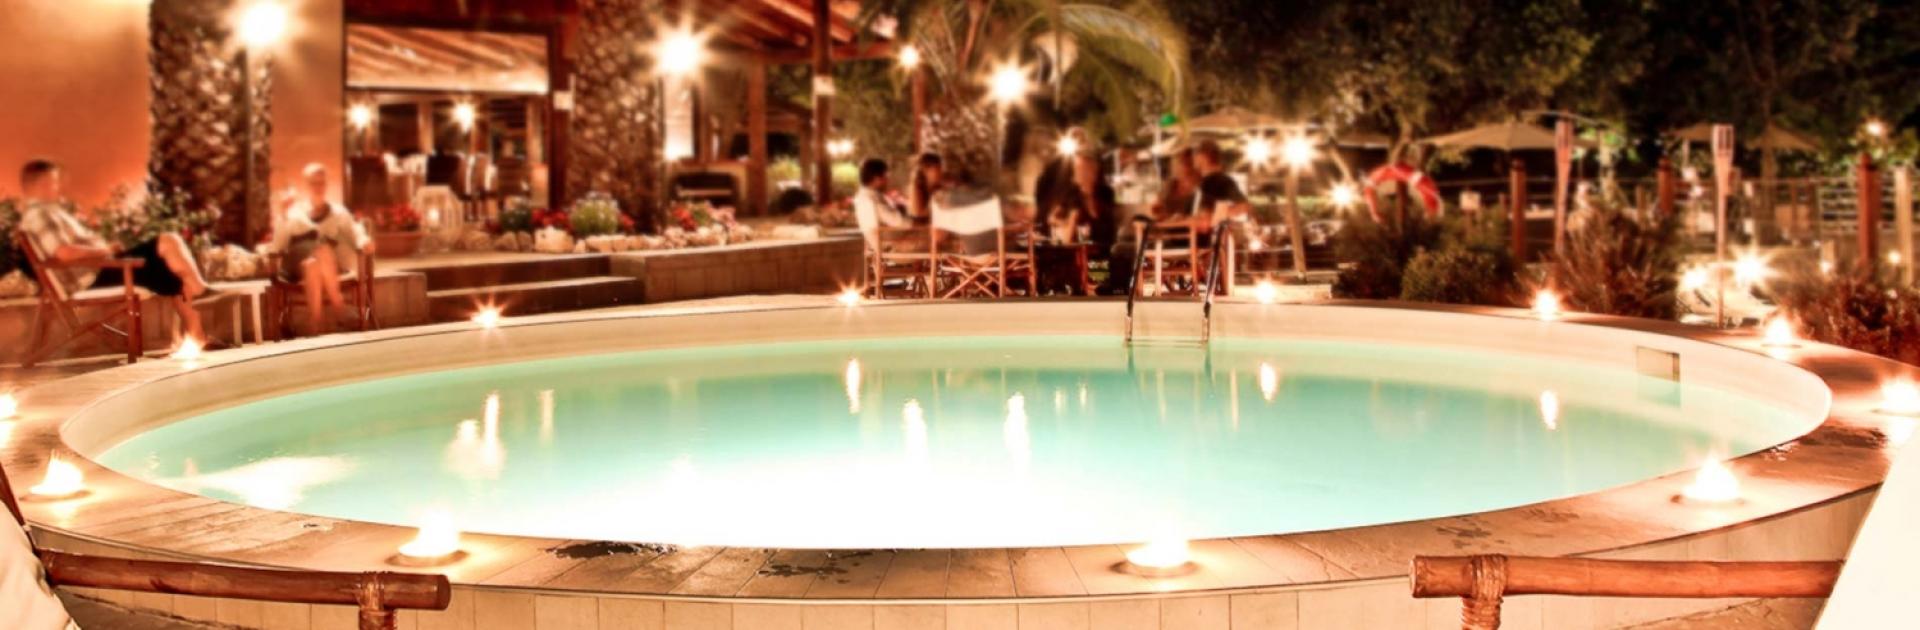 Eine gemütliche Nacht am Pool mit Palmen und Umgebungsbeleuchtung.